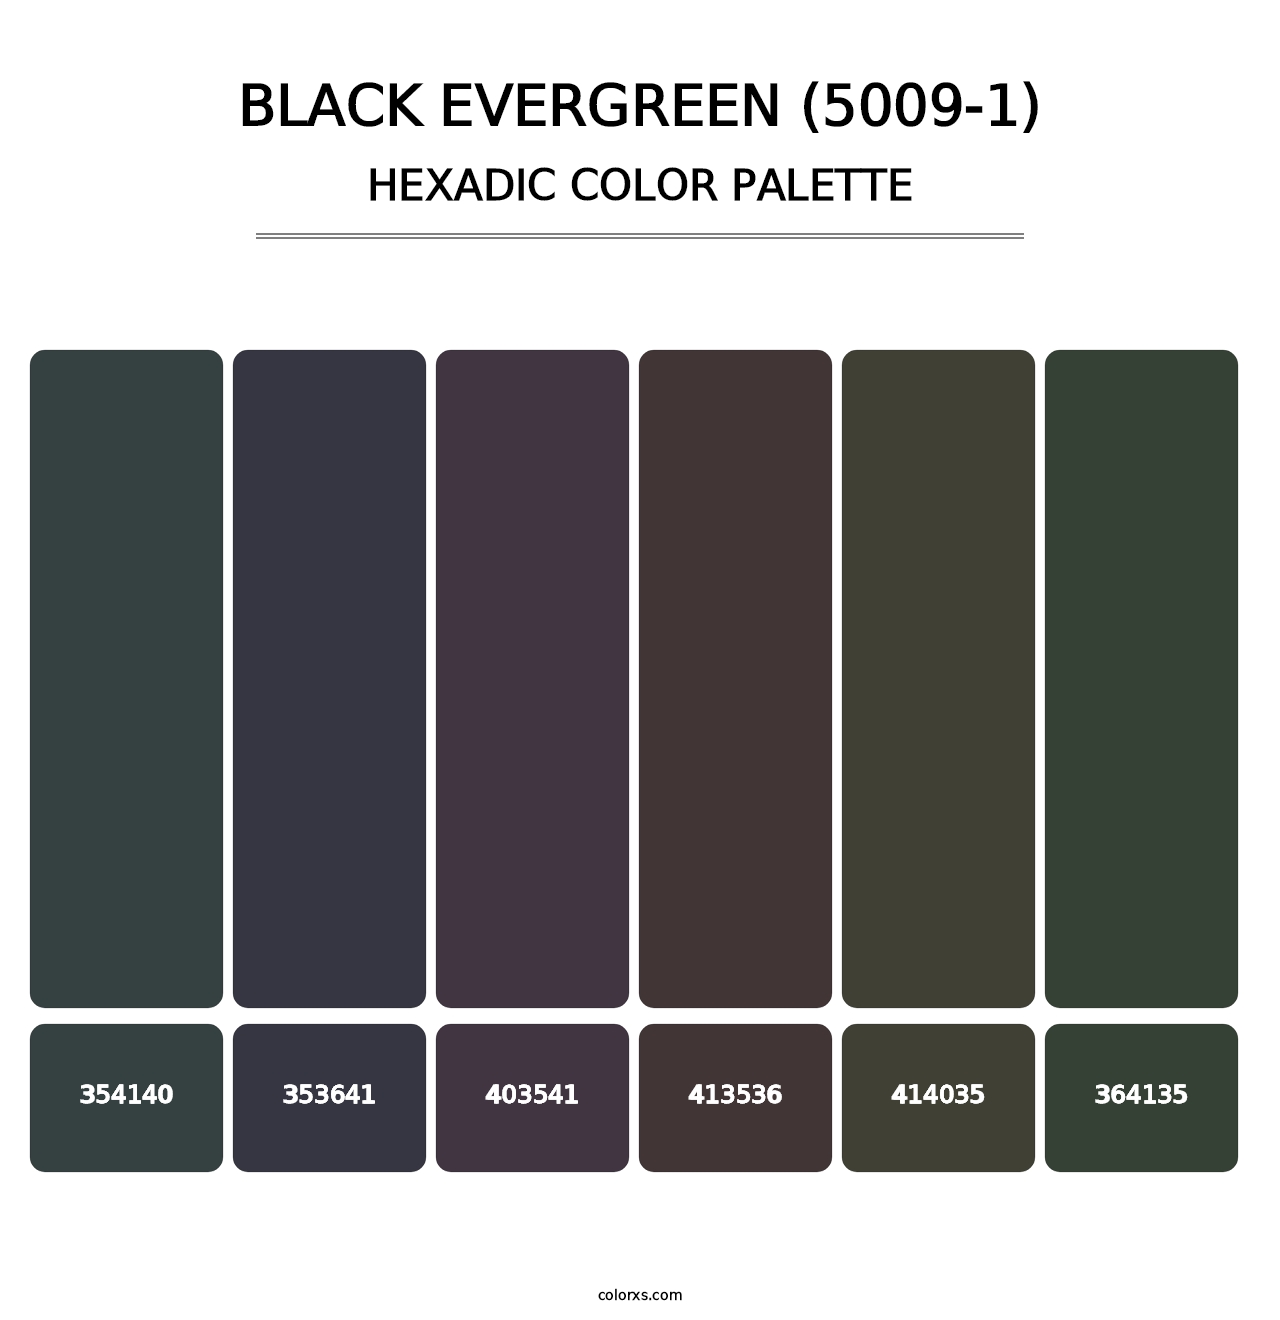 Black Evergreen (5009-1) - Hexadic Color Palette